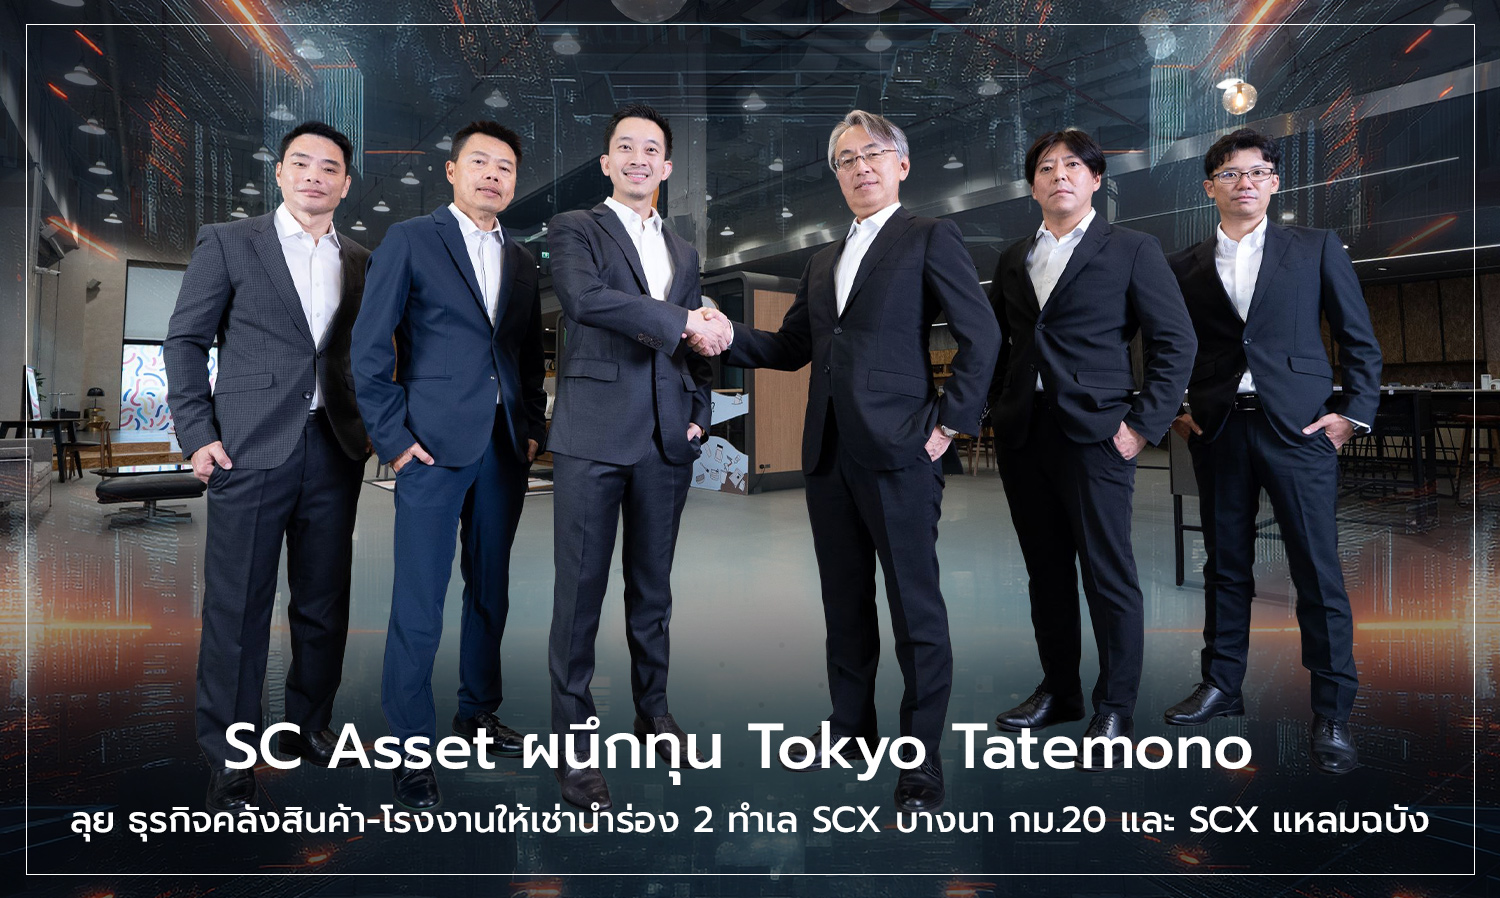 SC Asset ผนึกทุน Tokyo Tatemono บิ๊กอสังหาฯ ระดับแถวหน้าจากญี่ปุ่น เดินหน้าร่วมทุนต่อเนื่อง ลุยธุรกิจคลังสินค้า-โรงงานให้เช่านำร่อง 2 ทำเลศักยภาพ SCX บางนา กม.20 และ SCX แหลมฉบัง รองรับการเติบโตธุรกิจอีคอมเมิร์ซ